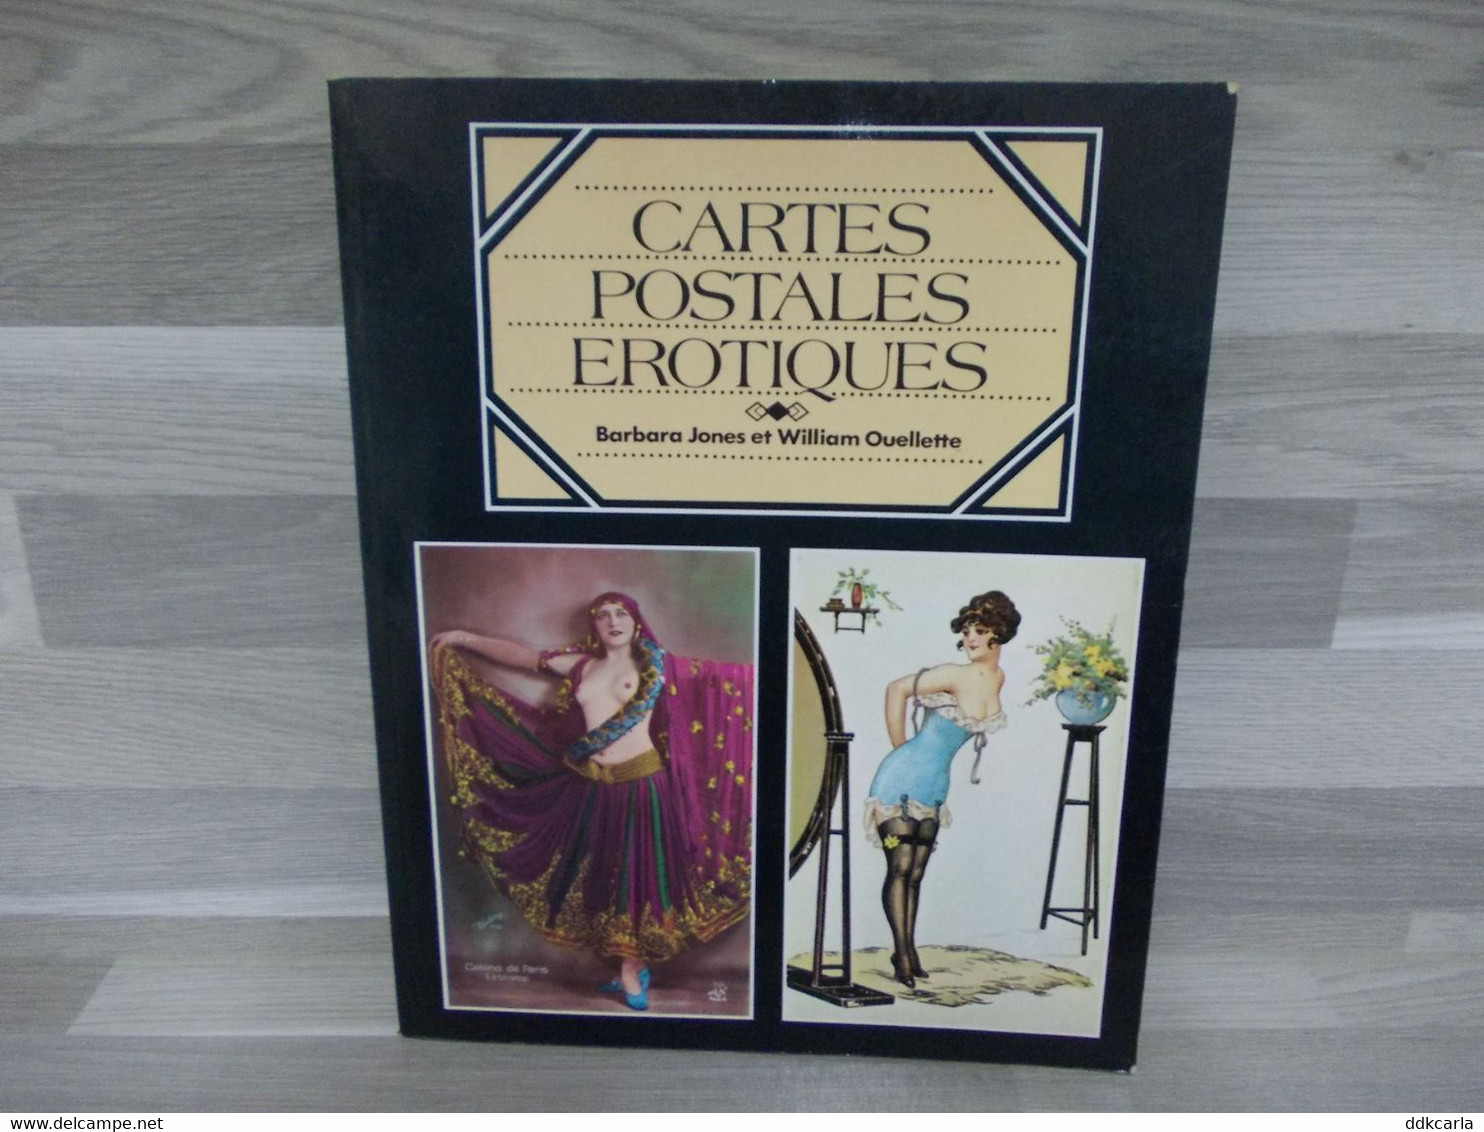 Cartes Postales Erotiques - Barbara Jones Et William Ouellette - Books & Catalogues